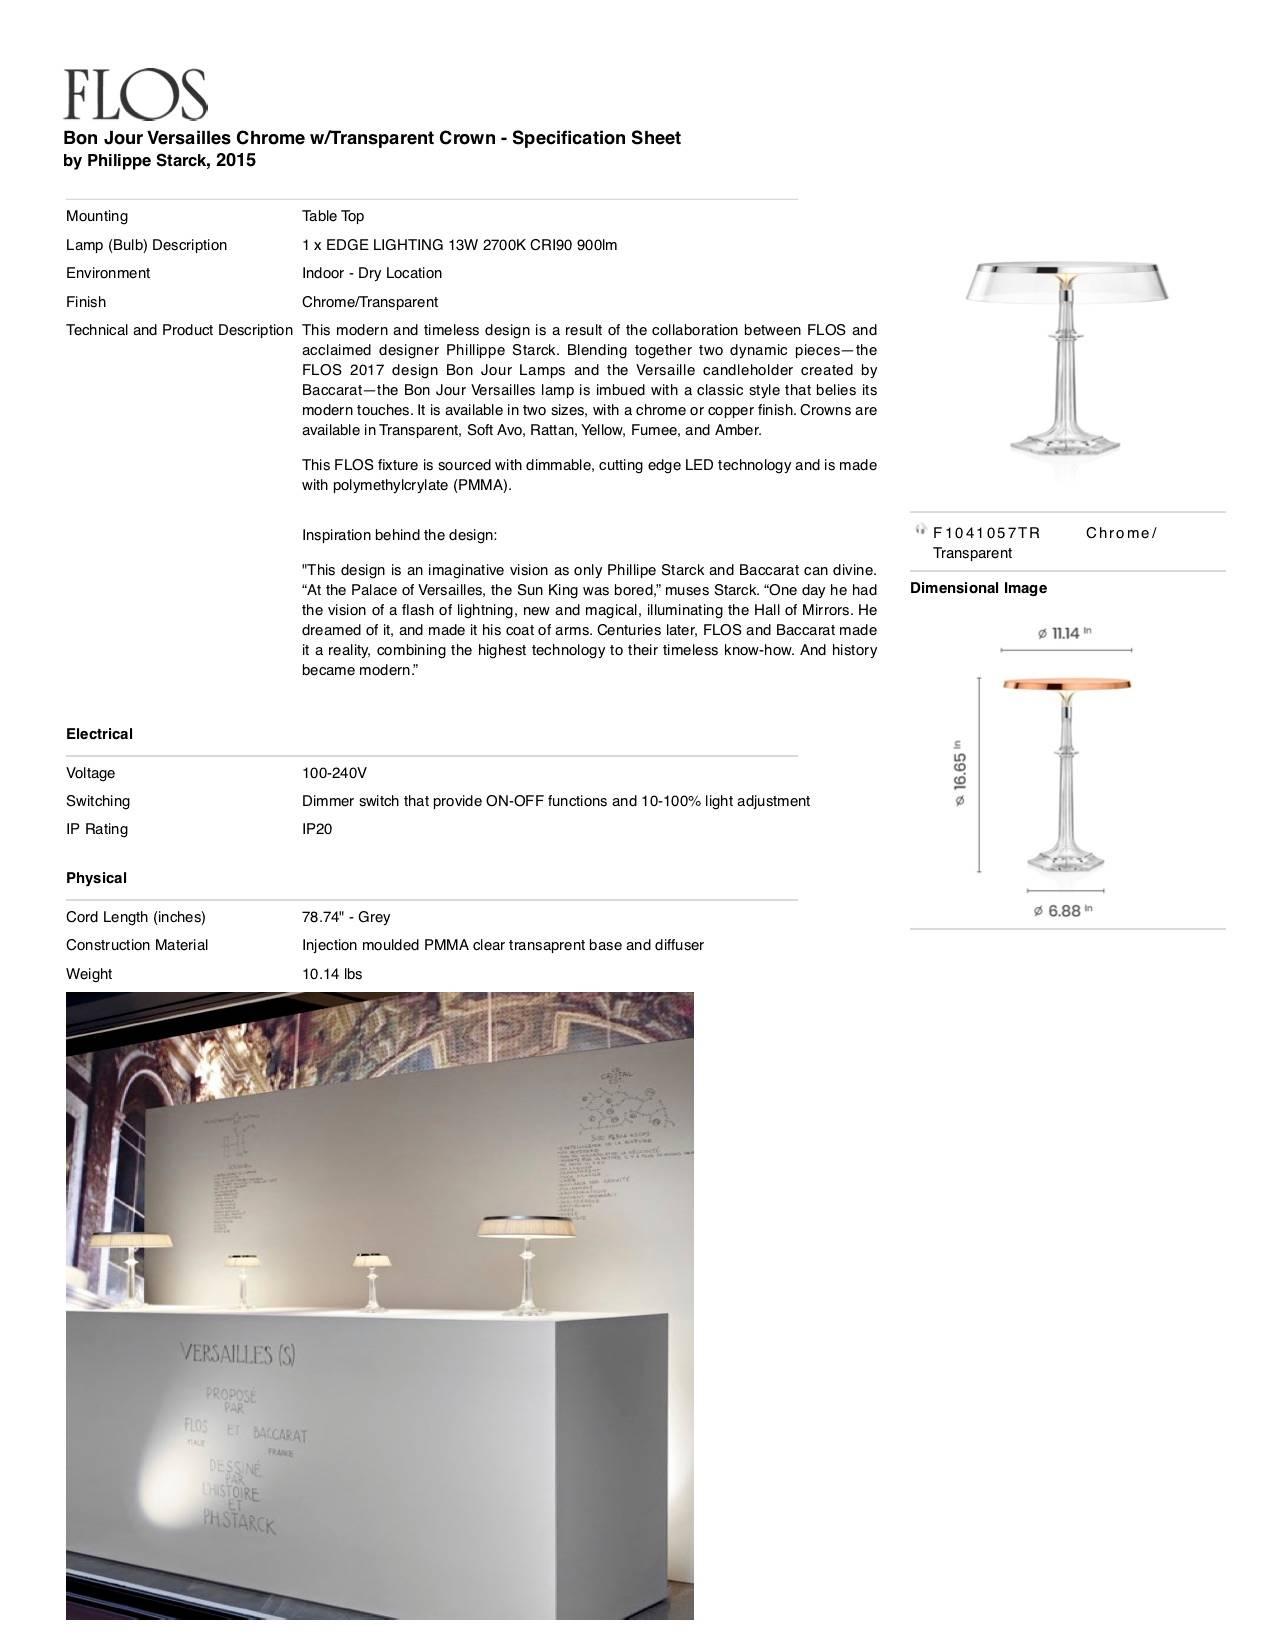 Italian FLOS Bon Jour Versailles Chrome Lamp w/ Transparent Crown by Philippe Starck For Sale